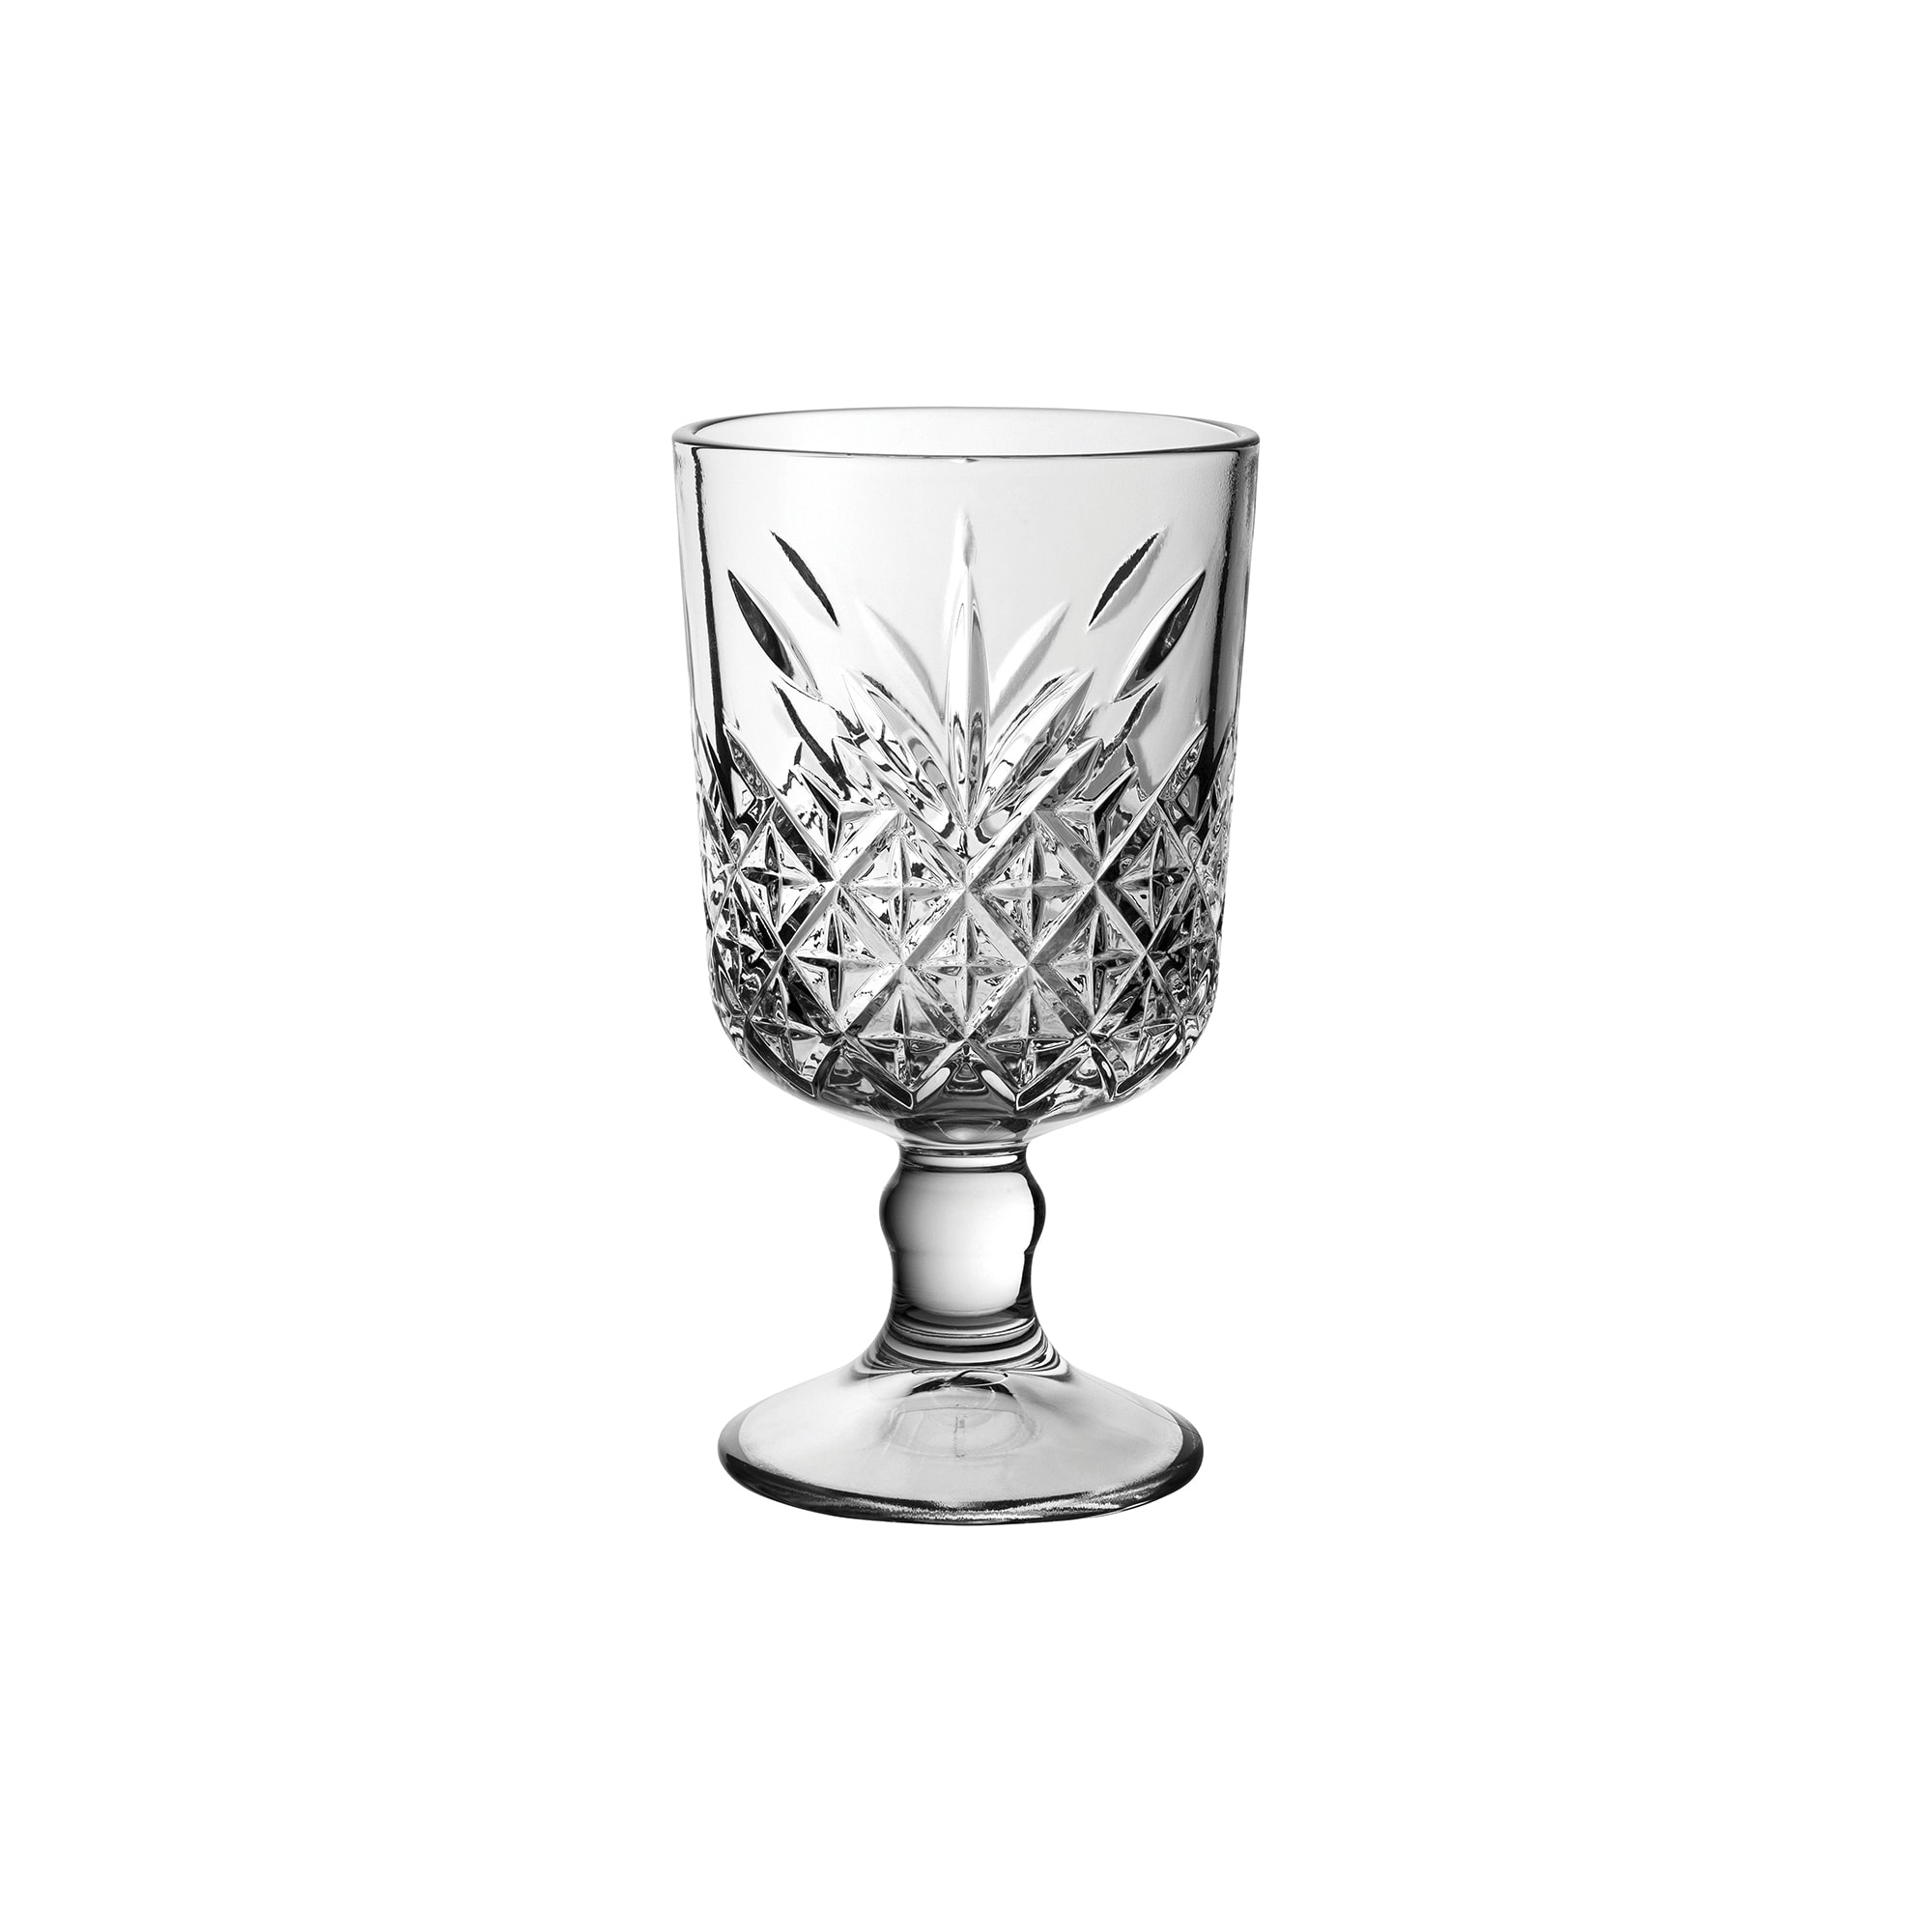 Arcoroc Q2505 19 oz Universal Tall Wine Glass